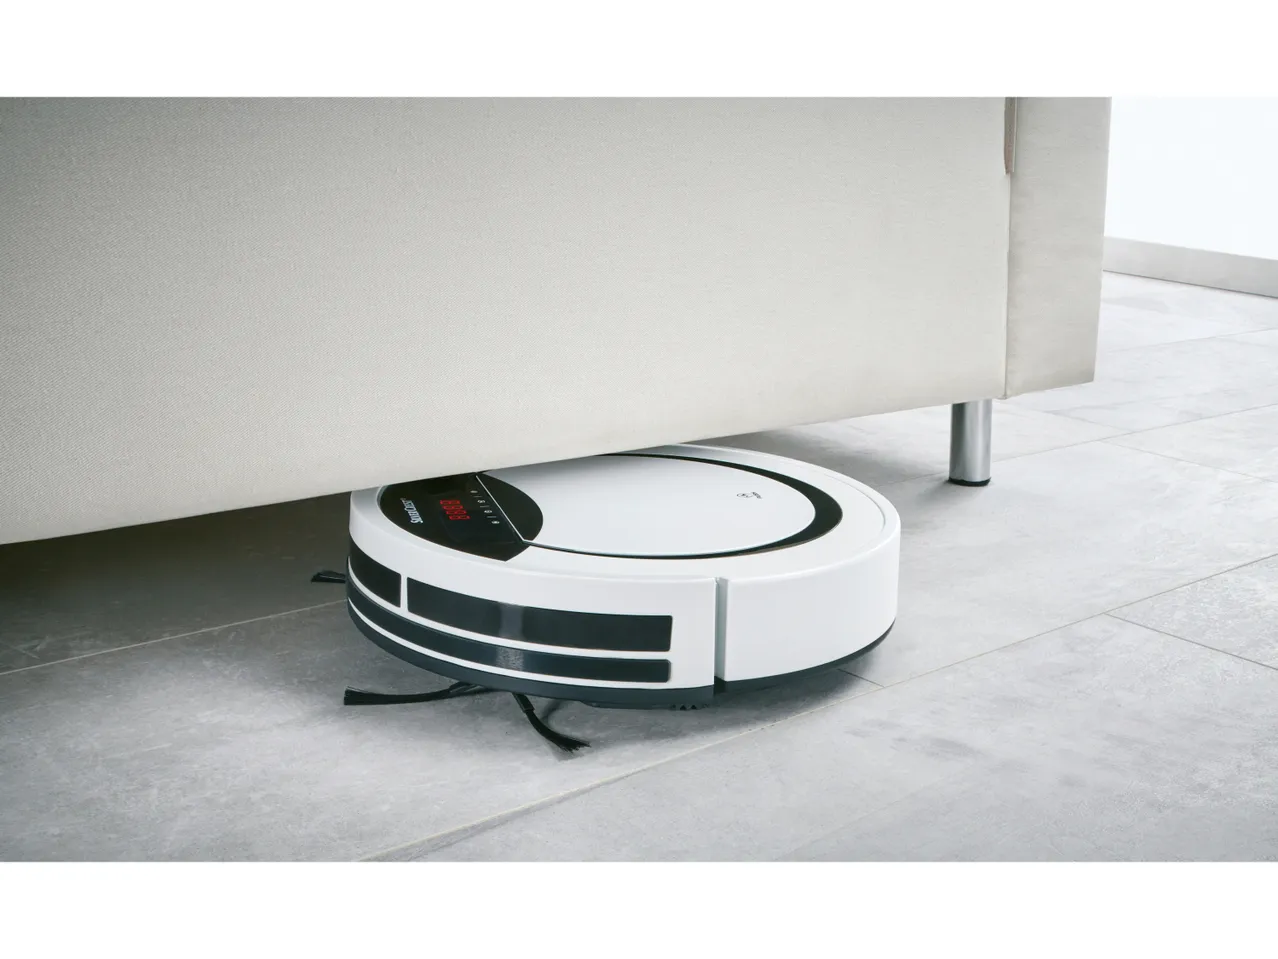 Robot aspirapolvere , prezzo 119 EUR 
Robot aspirapolvere 
- 6 modalità di pulizia:
- ...